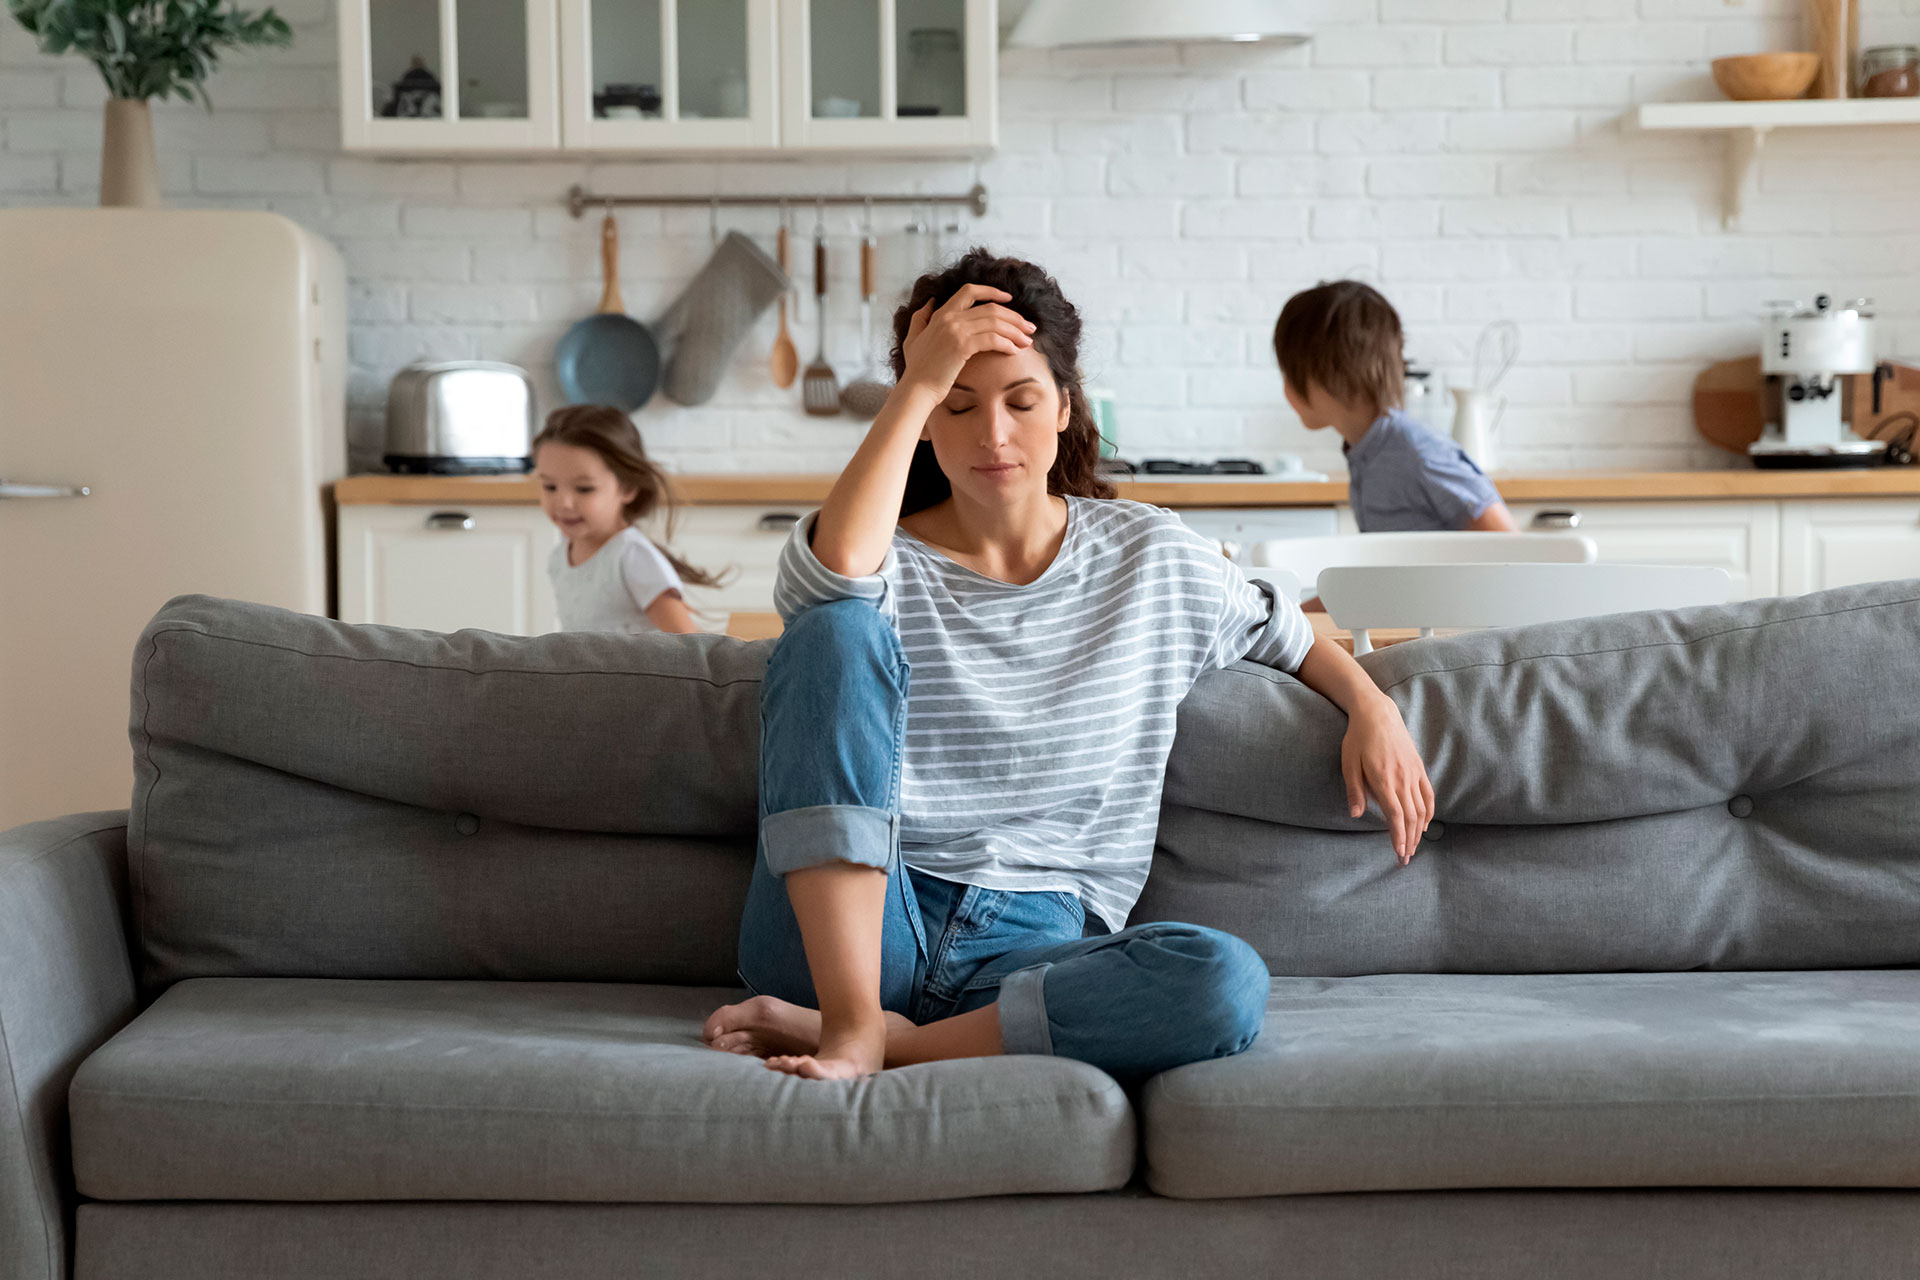 El hecho de trabajar en forma remota o con los chicos en la casa sin ir al colegio nos ha transformado en menos productivos (Shutterstock)